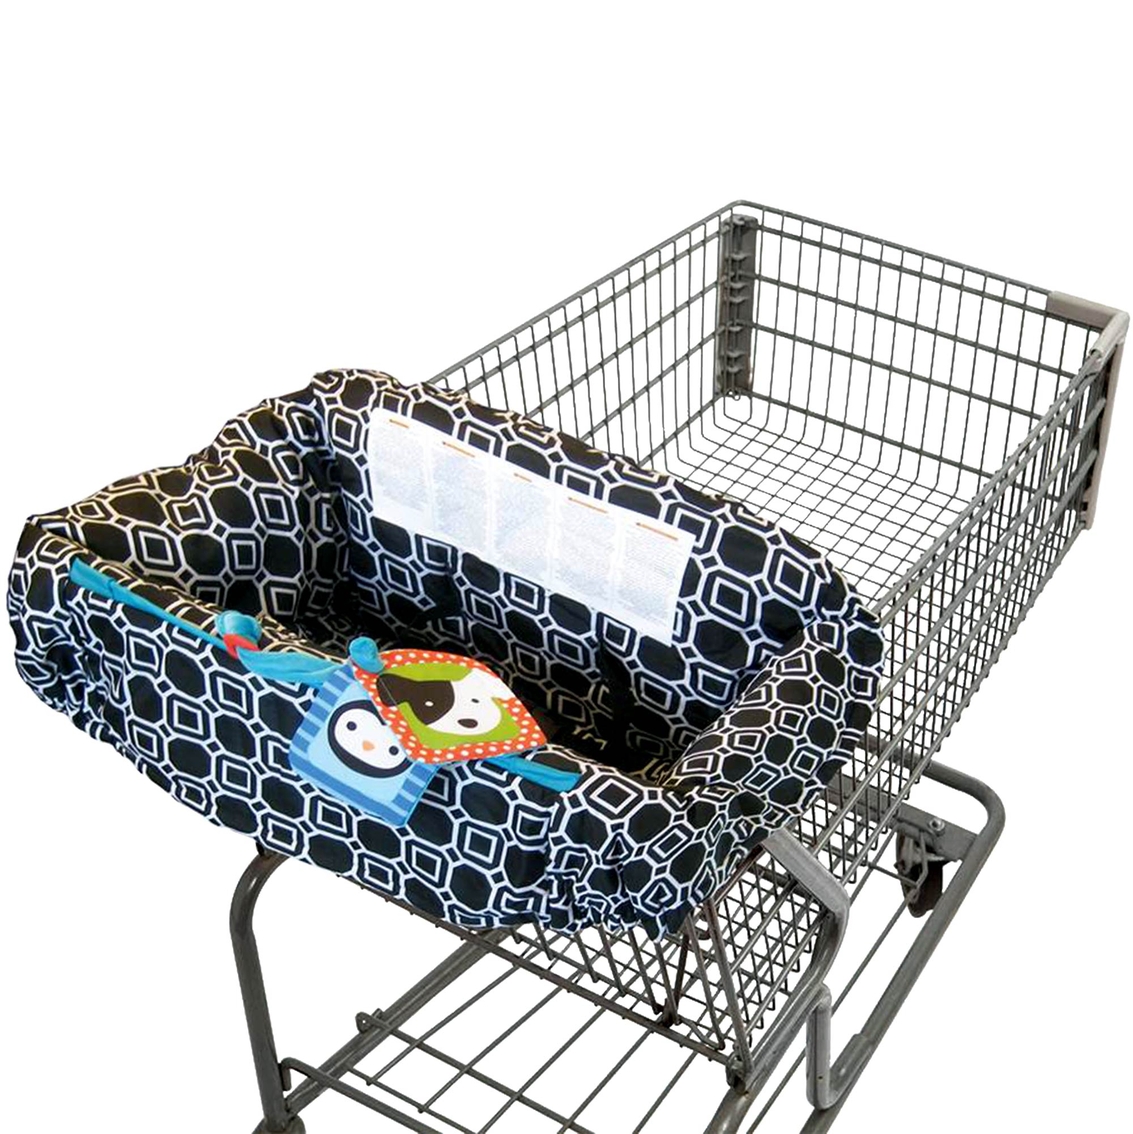 buy buy baby cart